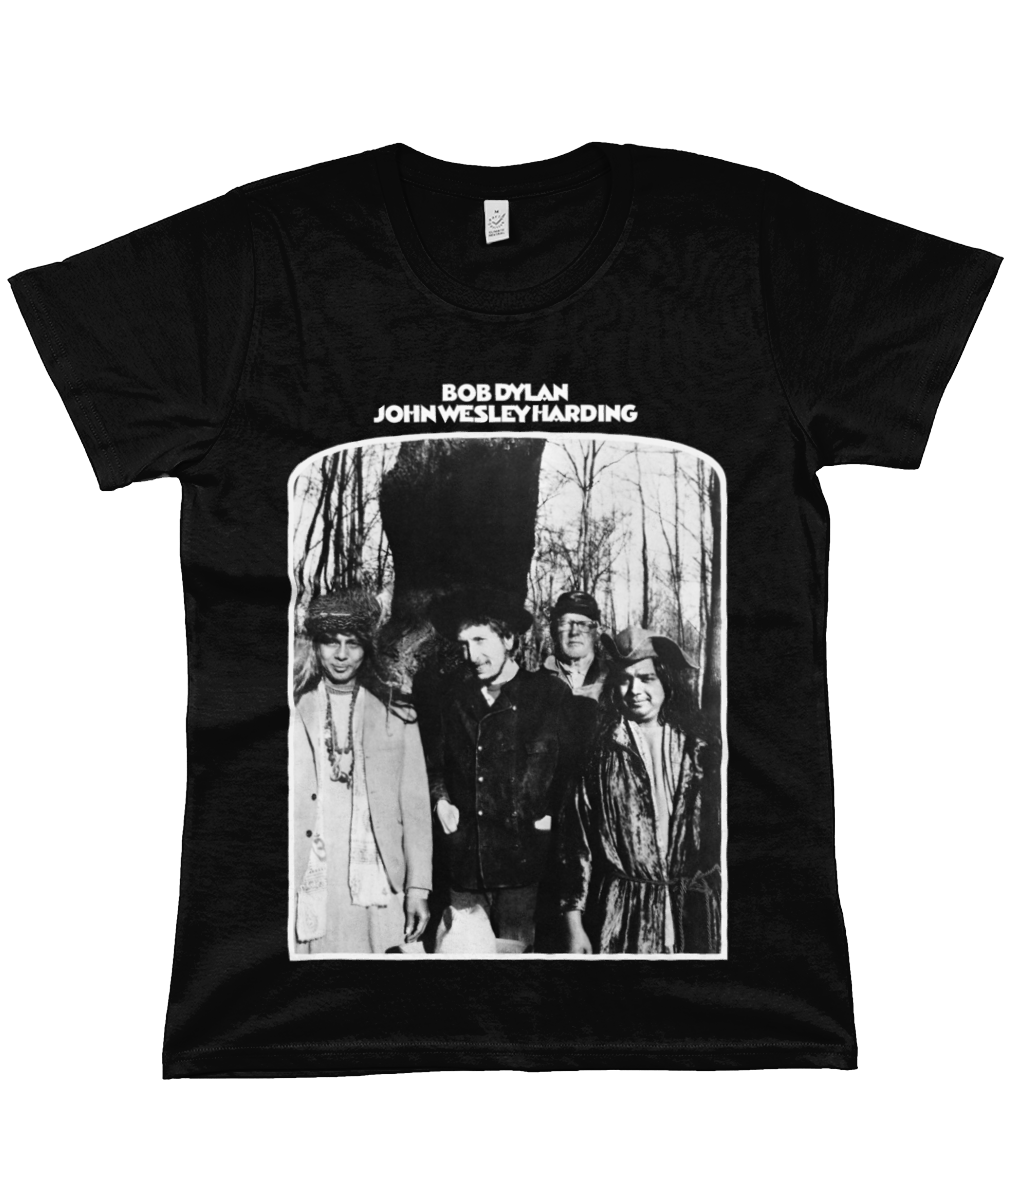 BOB DYLAN - JOHN WESLEY HARDING - 1967 - Black & White - Women's T Shirt